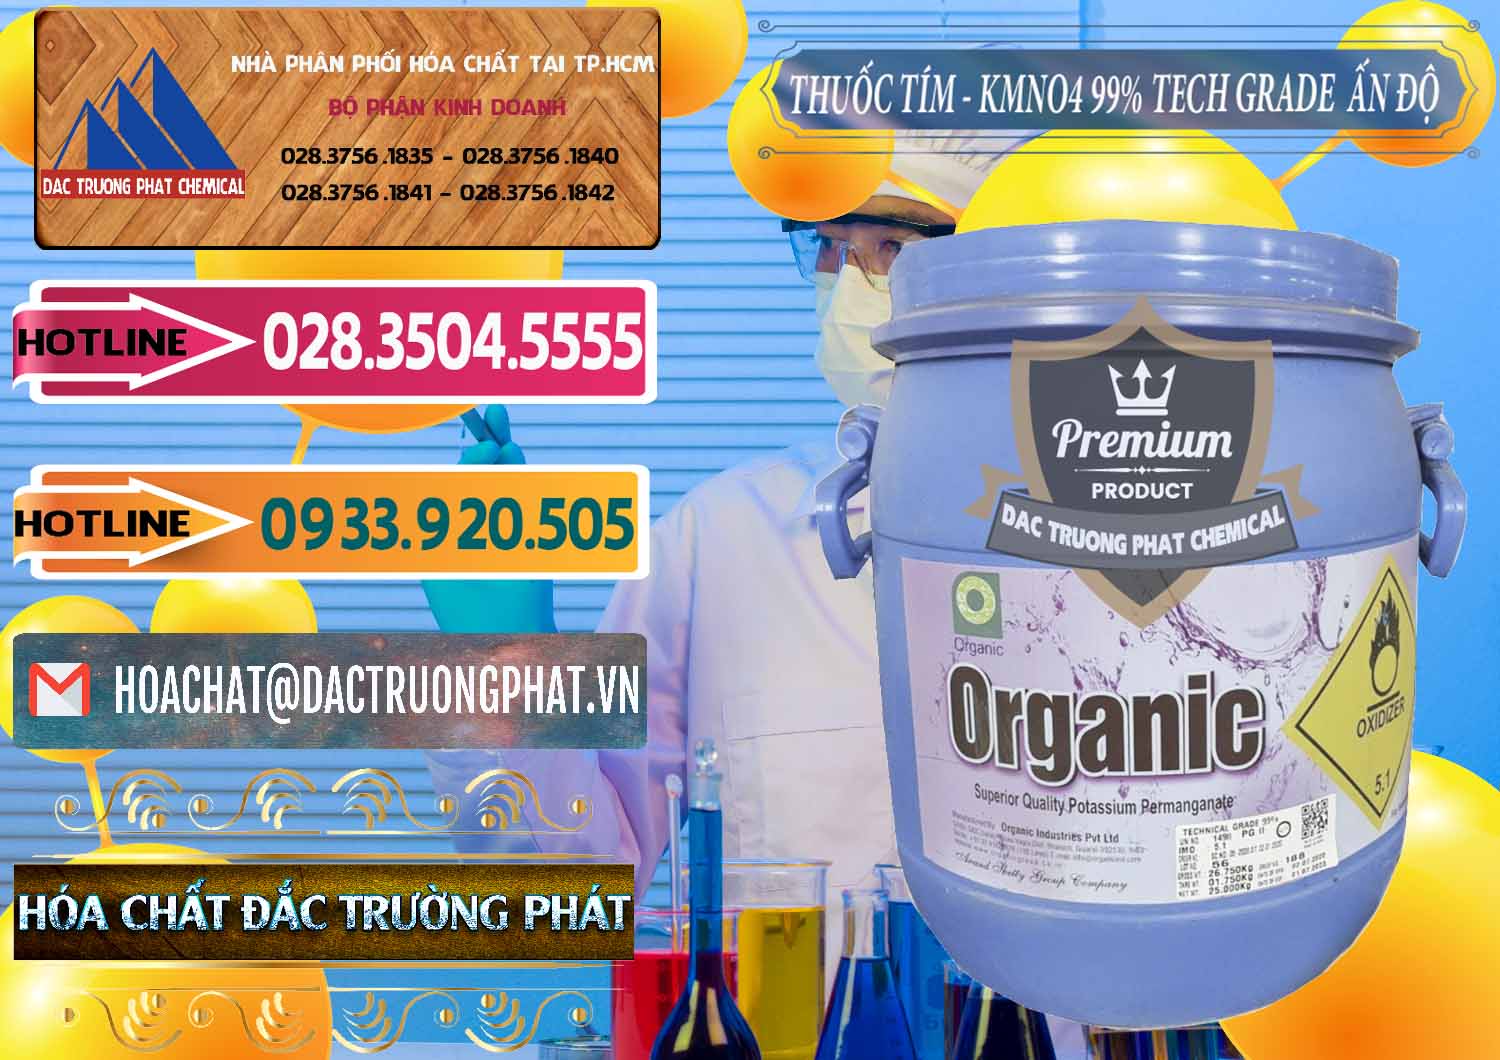 Công ty chuyên nhập khẩu _ bán Thuốc Tím - KMNO4 99% Organic Group Ấn Độ India - 0250 - Cty chuyên kinh doanh - phân phối hóa chất tại TP.HCM - dactruongphat.vn